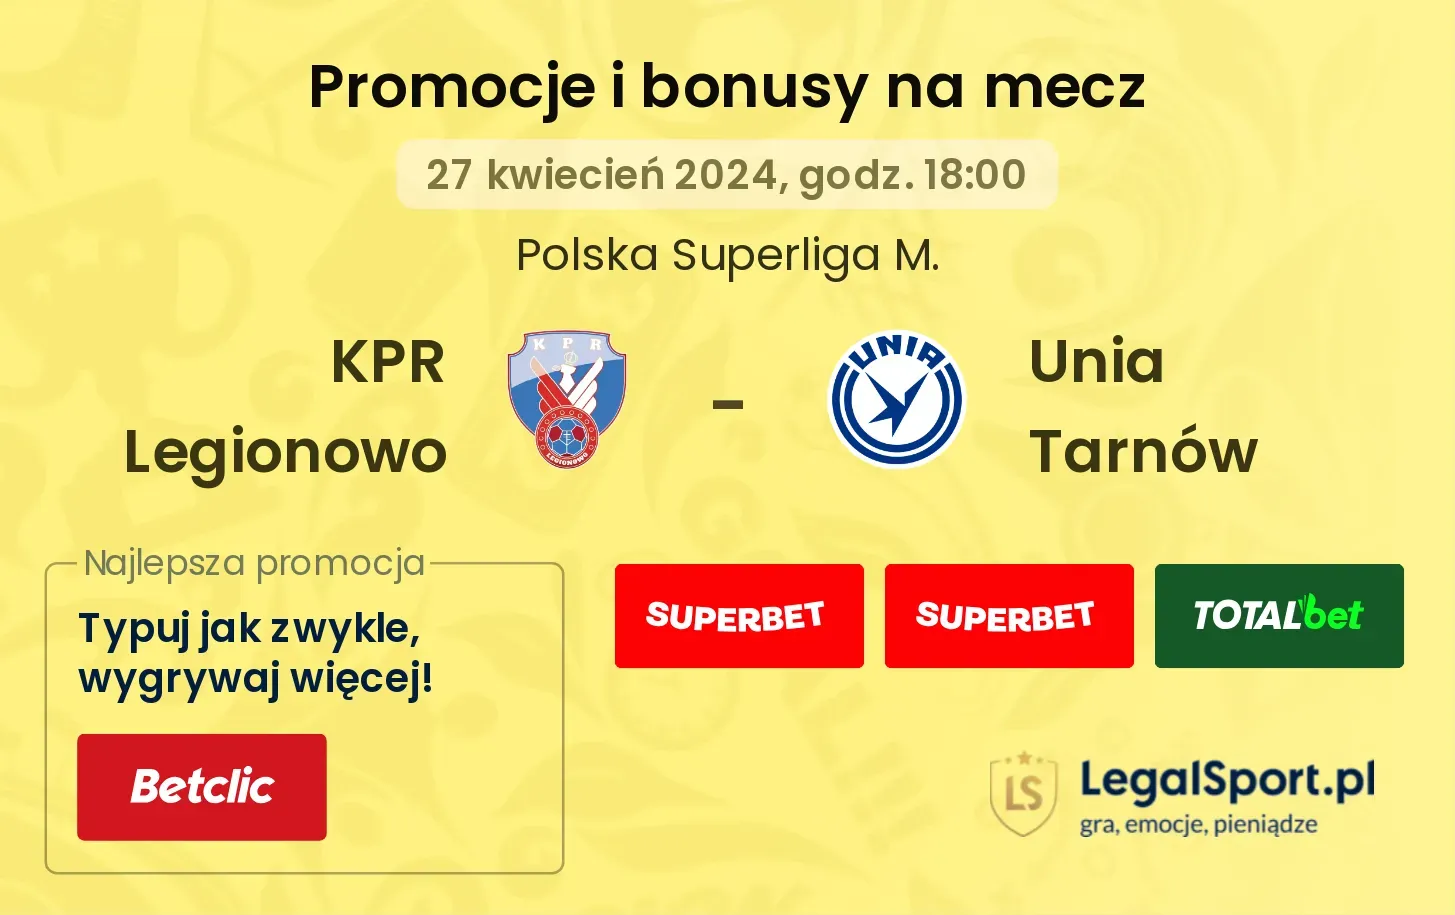 KPR Legionowo - Unia Tarnów promocje bonusy na mecz